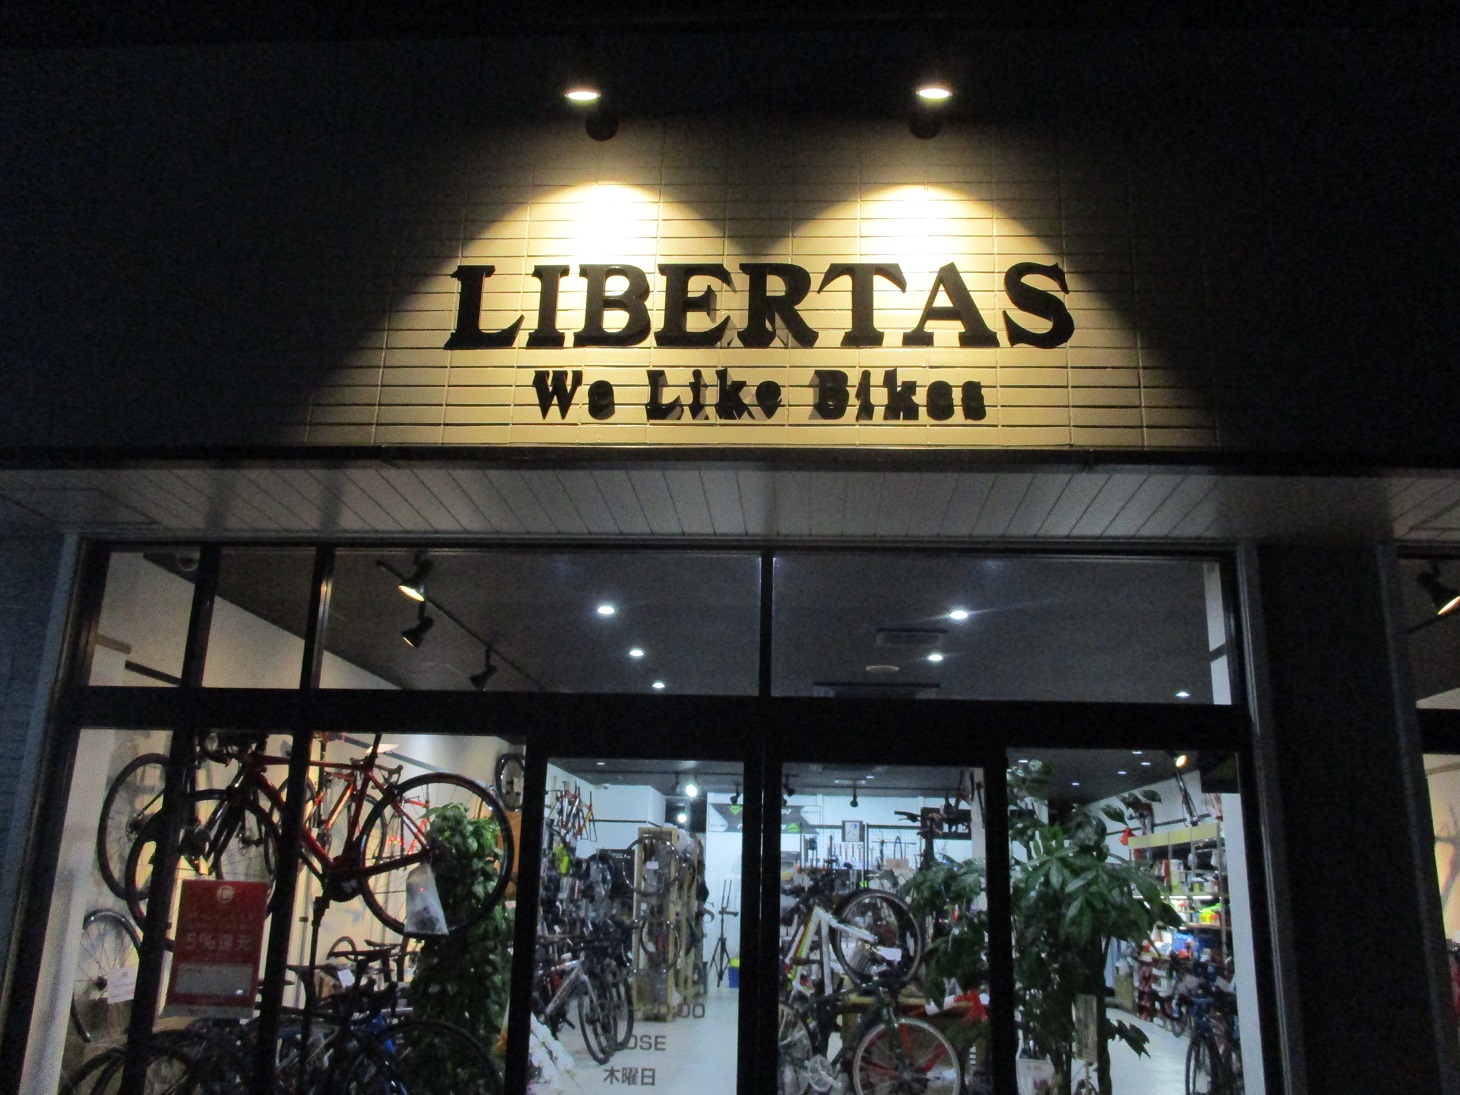 関東自転車株式会社 We Like Bikes 自転車大好きなお店です